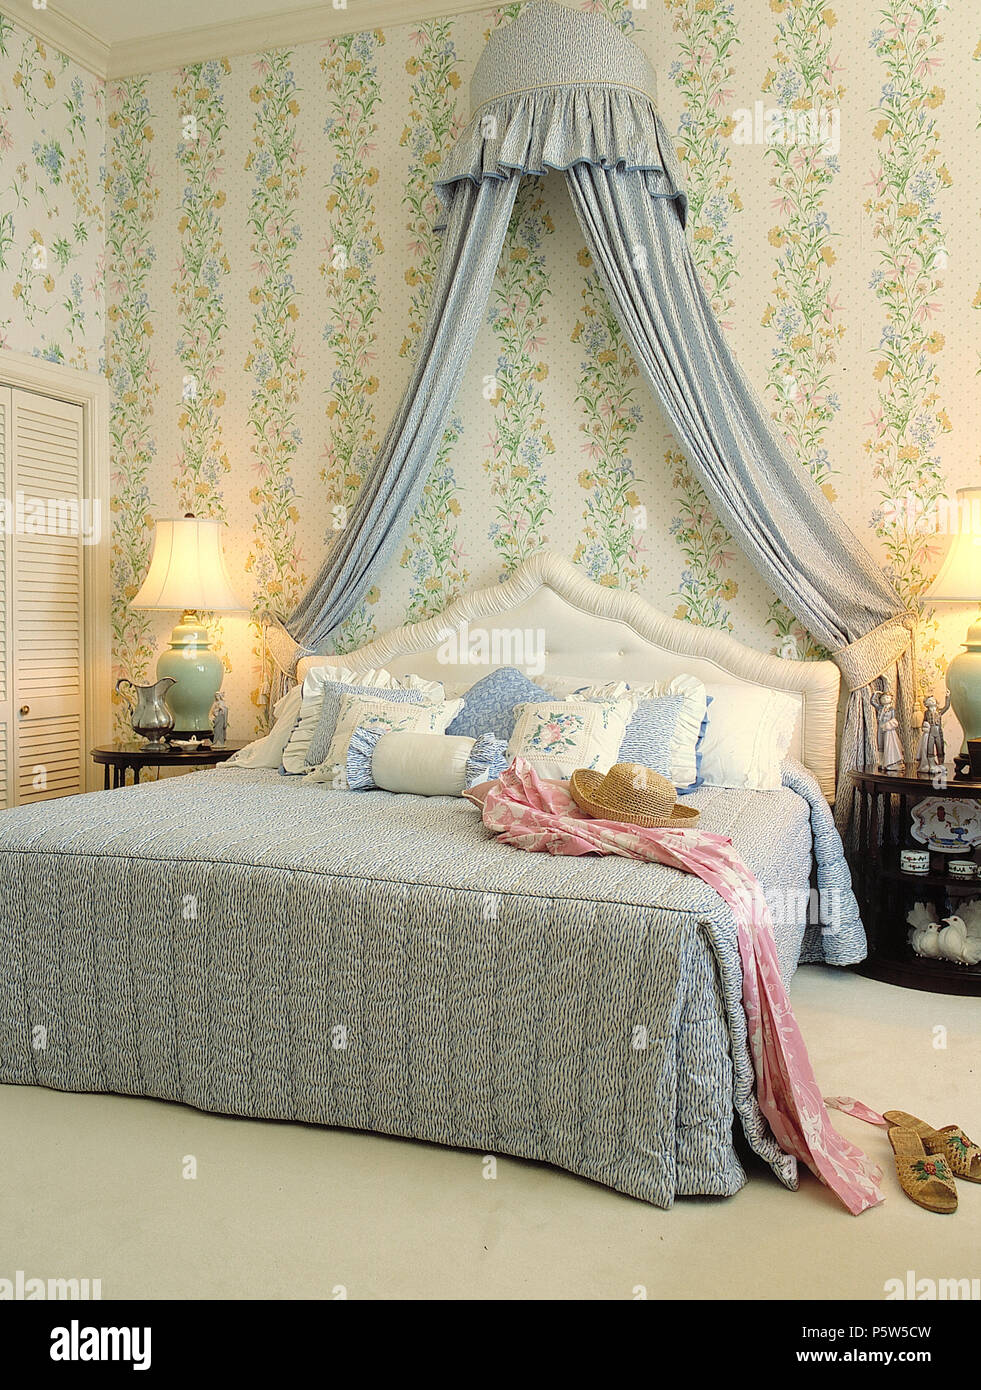 Coronet avec rideaux bleu au-dessus de lit king size dans la chambre avec un papier peint fleuri vert et lampes allumées Banque D'Images